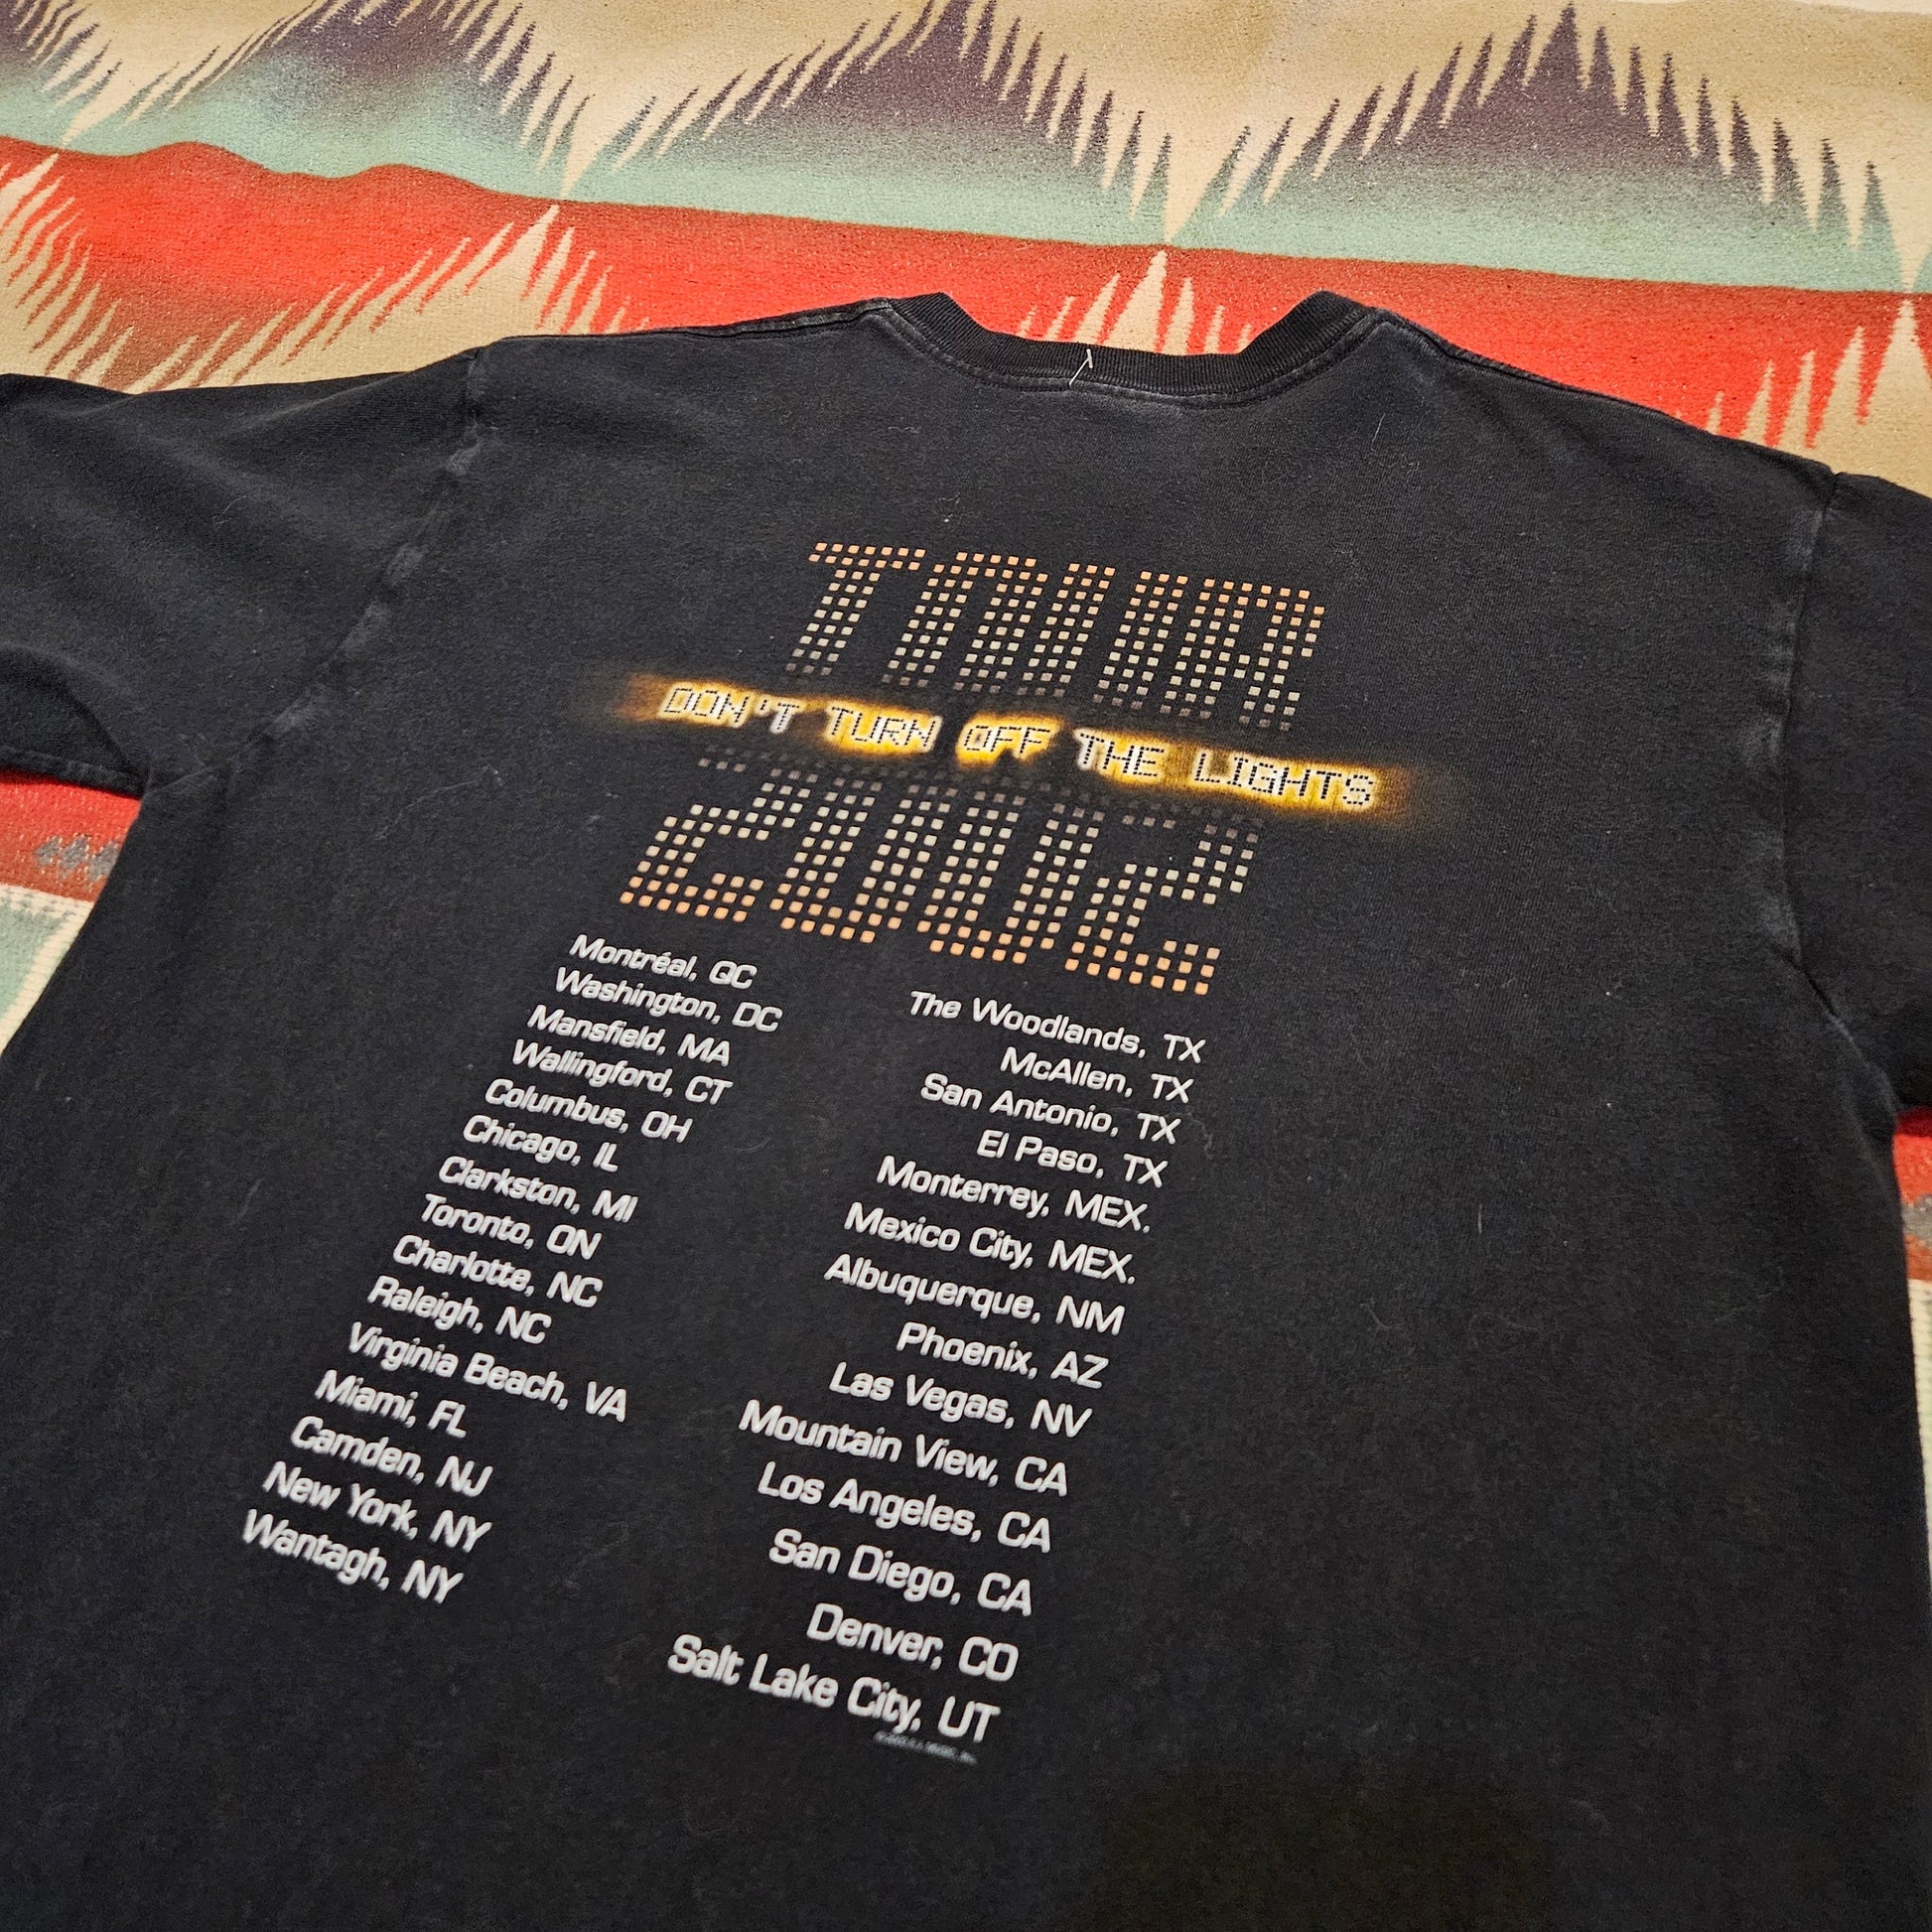 2000s 2002 Enrique Iglesias Don't Turn Off The Lights Tour Concert T-Shirt Size M